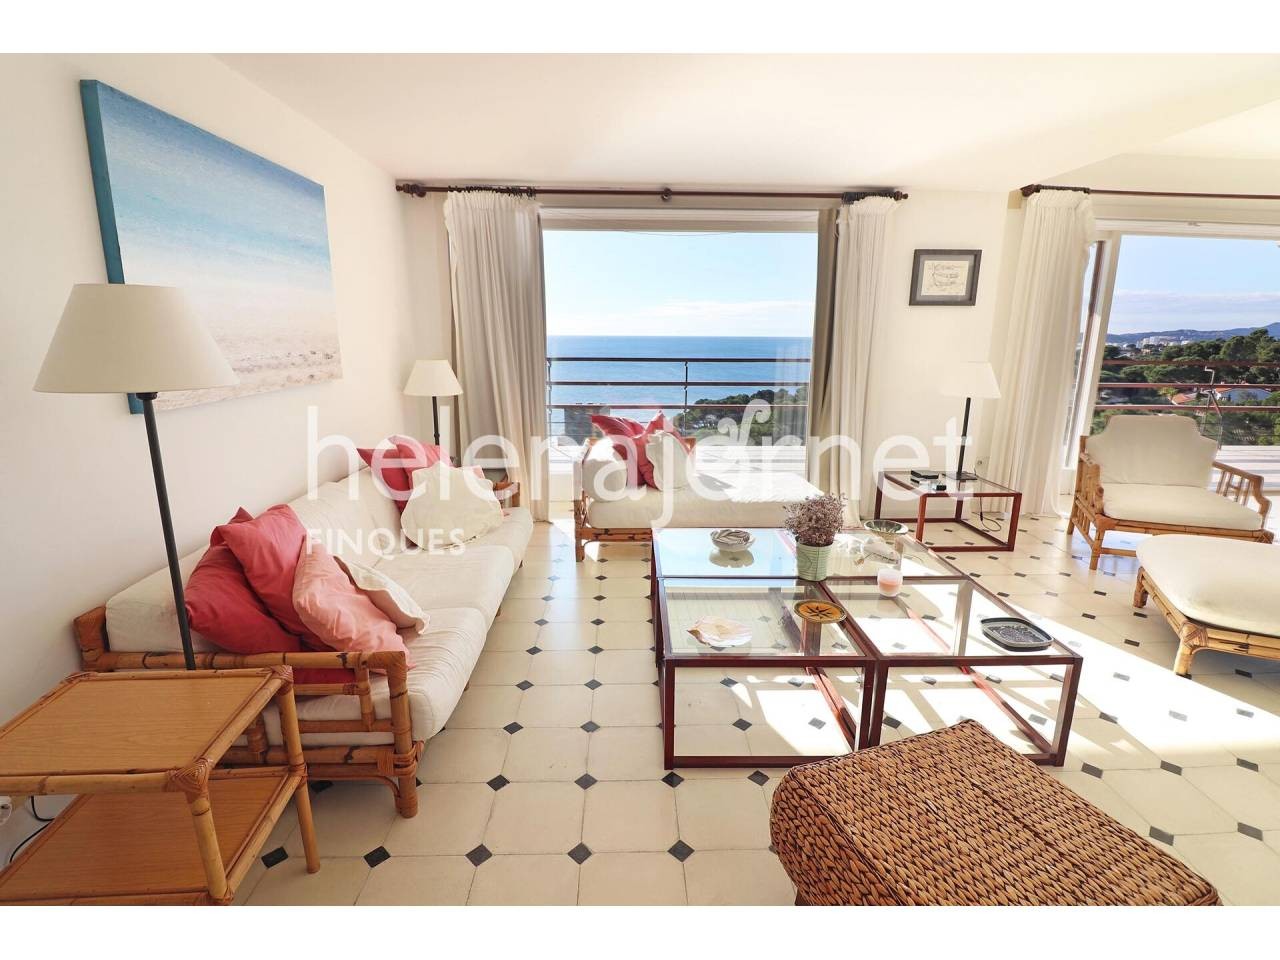 Appartement T3 exceptionnel avec vue sur la mer situé dans le bâtiment Eden Mar dans le quartier Torre Valentina. - 250